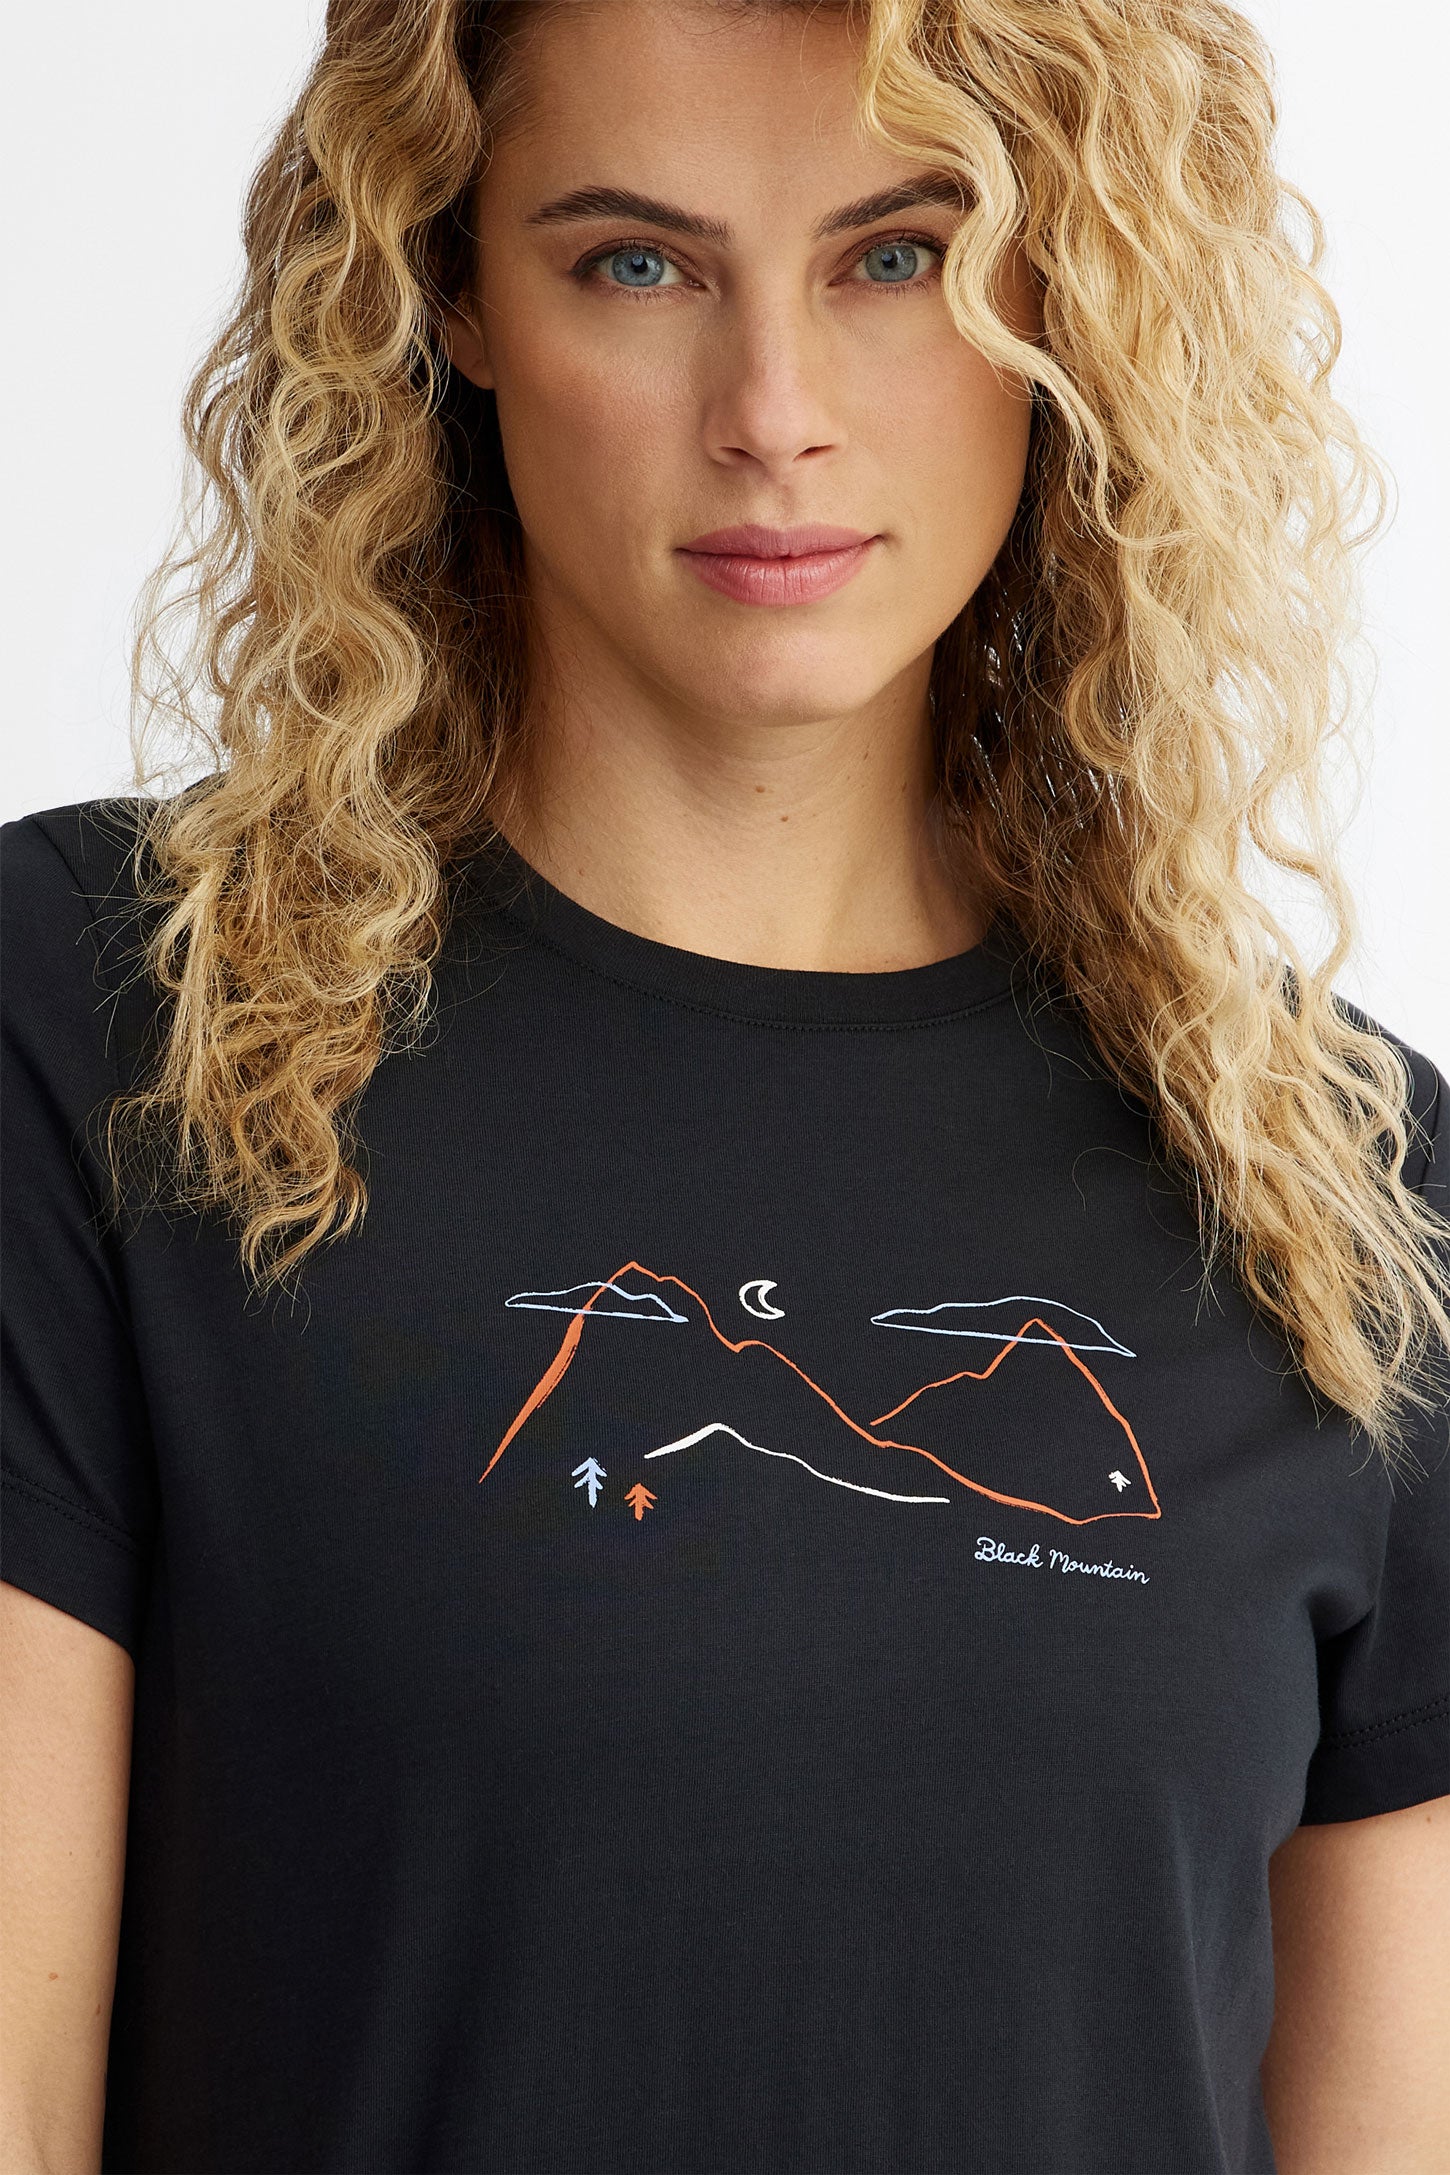 T-shirt col rond coton bio BM, 2/50$ - Femme && NOIR